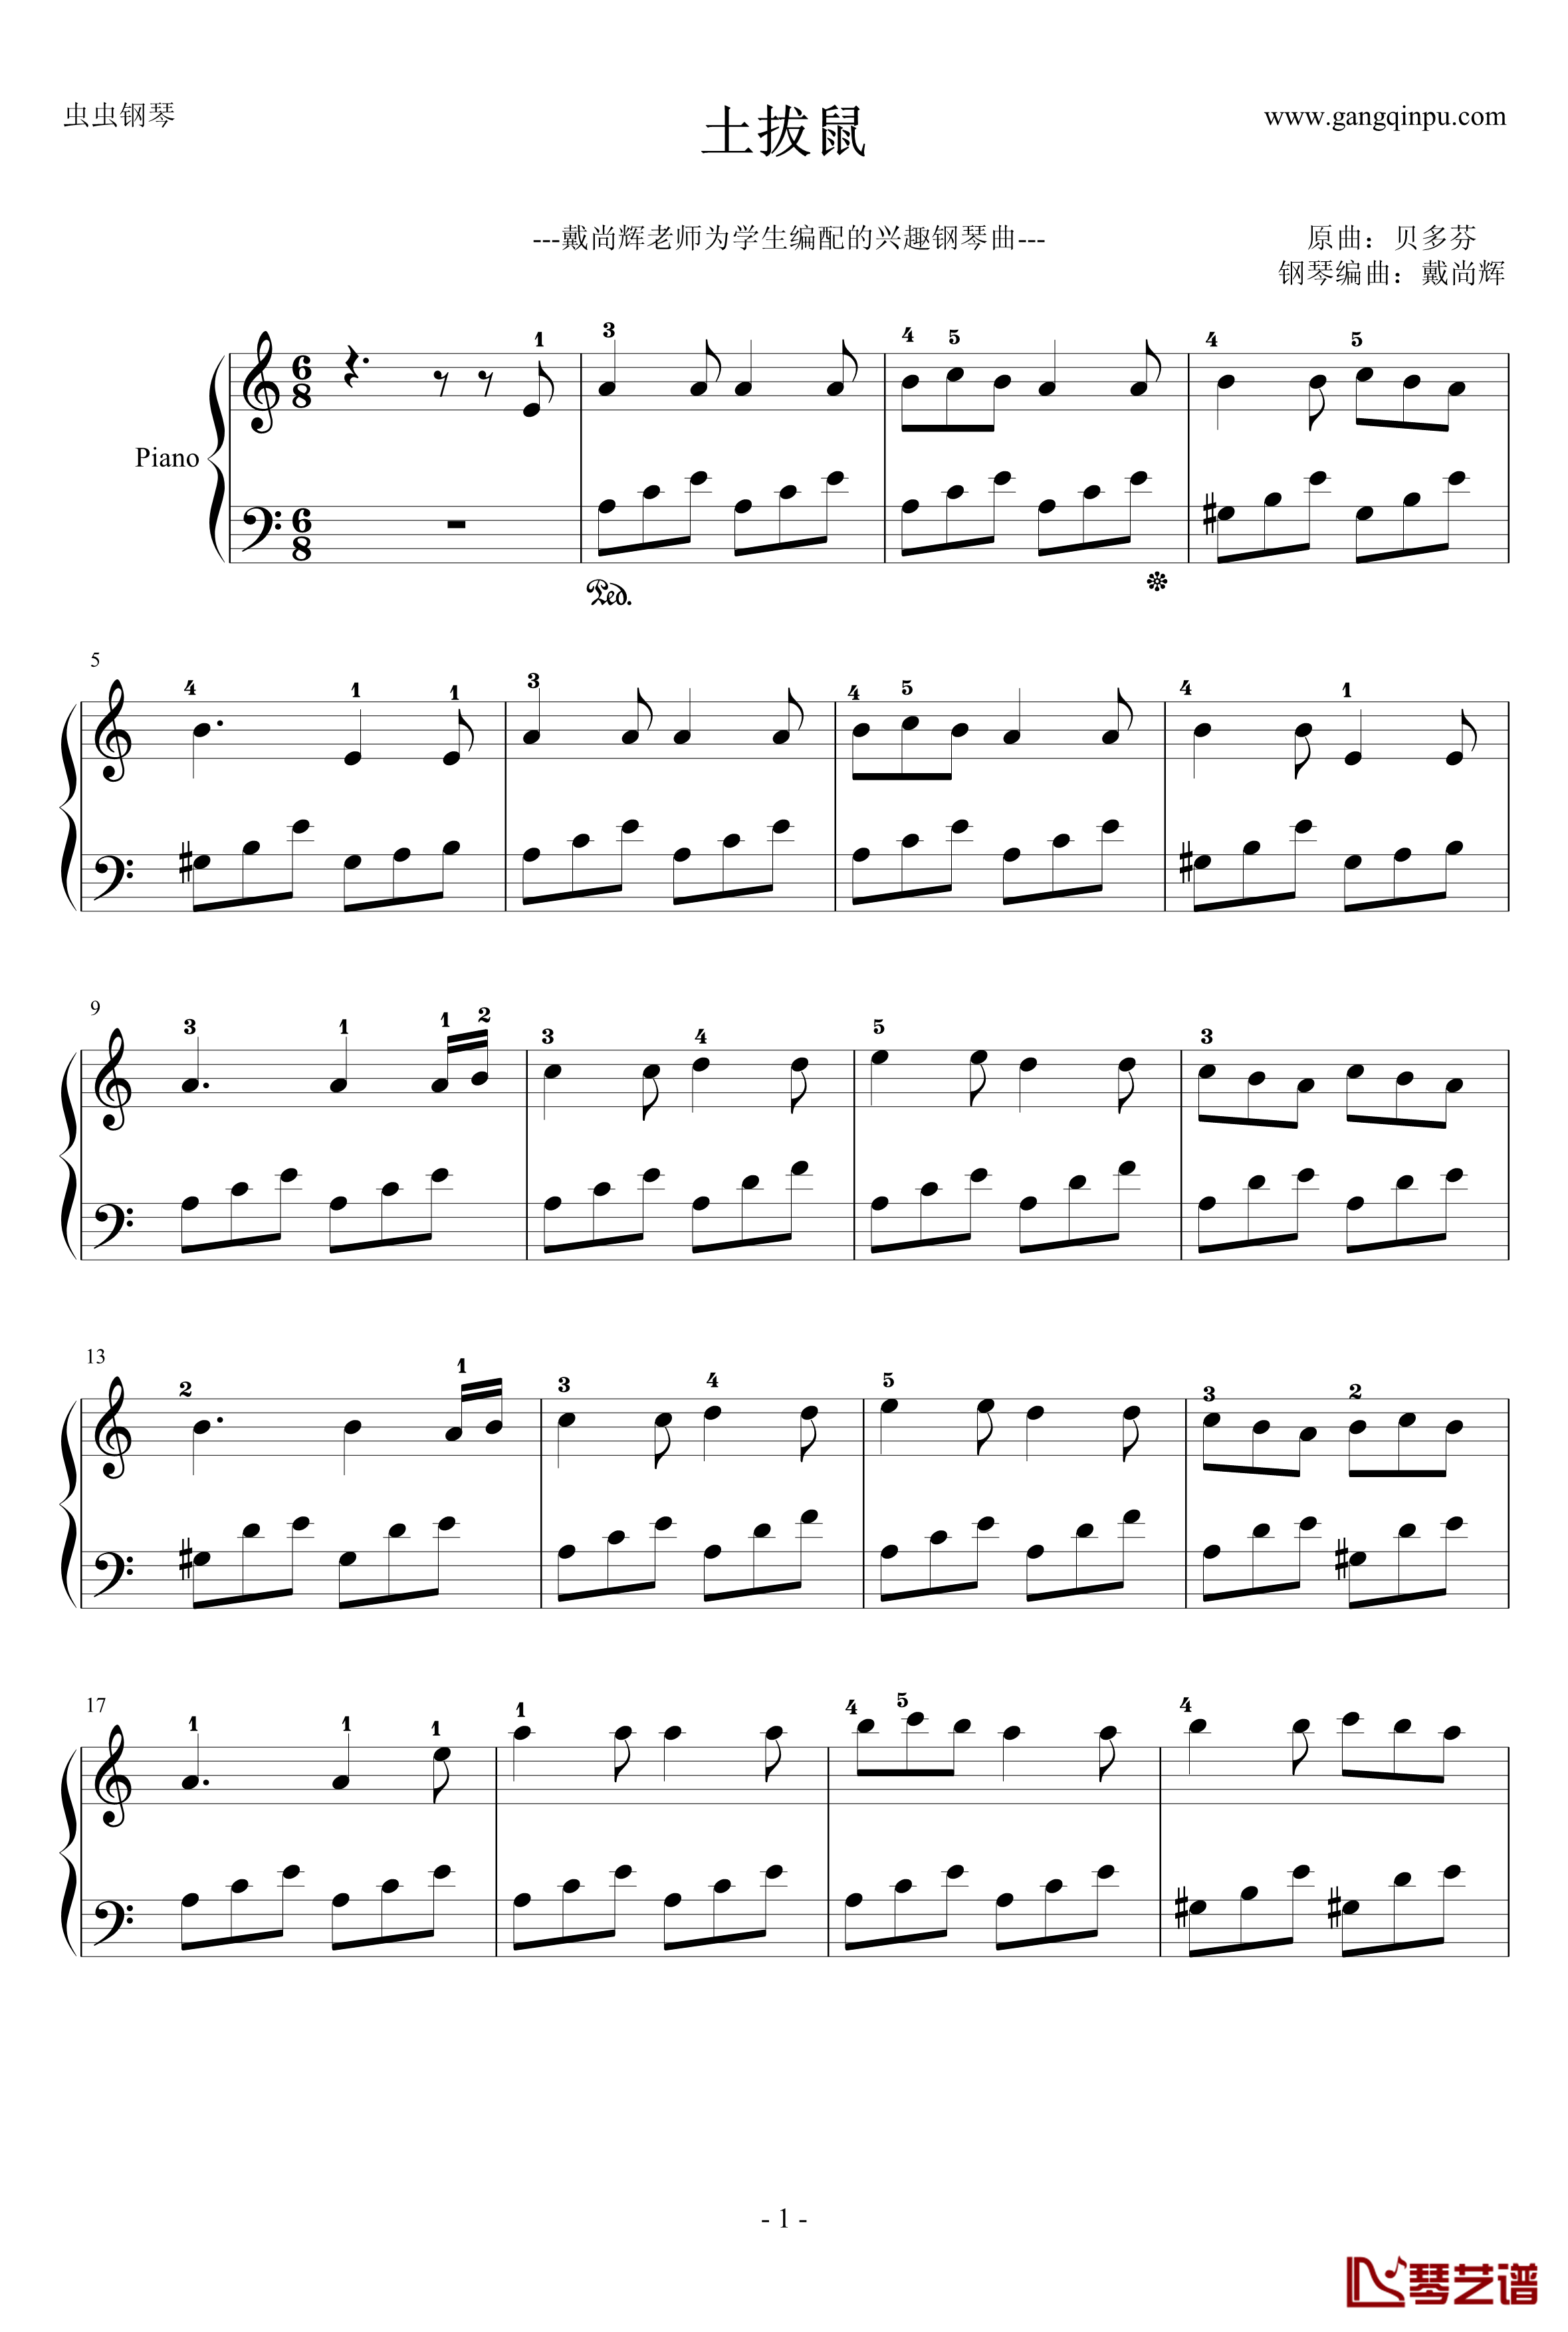 土拔鼠钢琴谱-优美版-儿童学生最喜欢弹的曲子-贝多芬-beethoven1